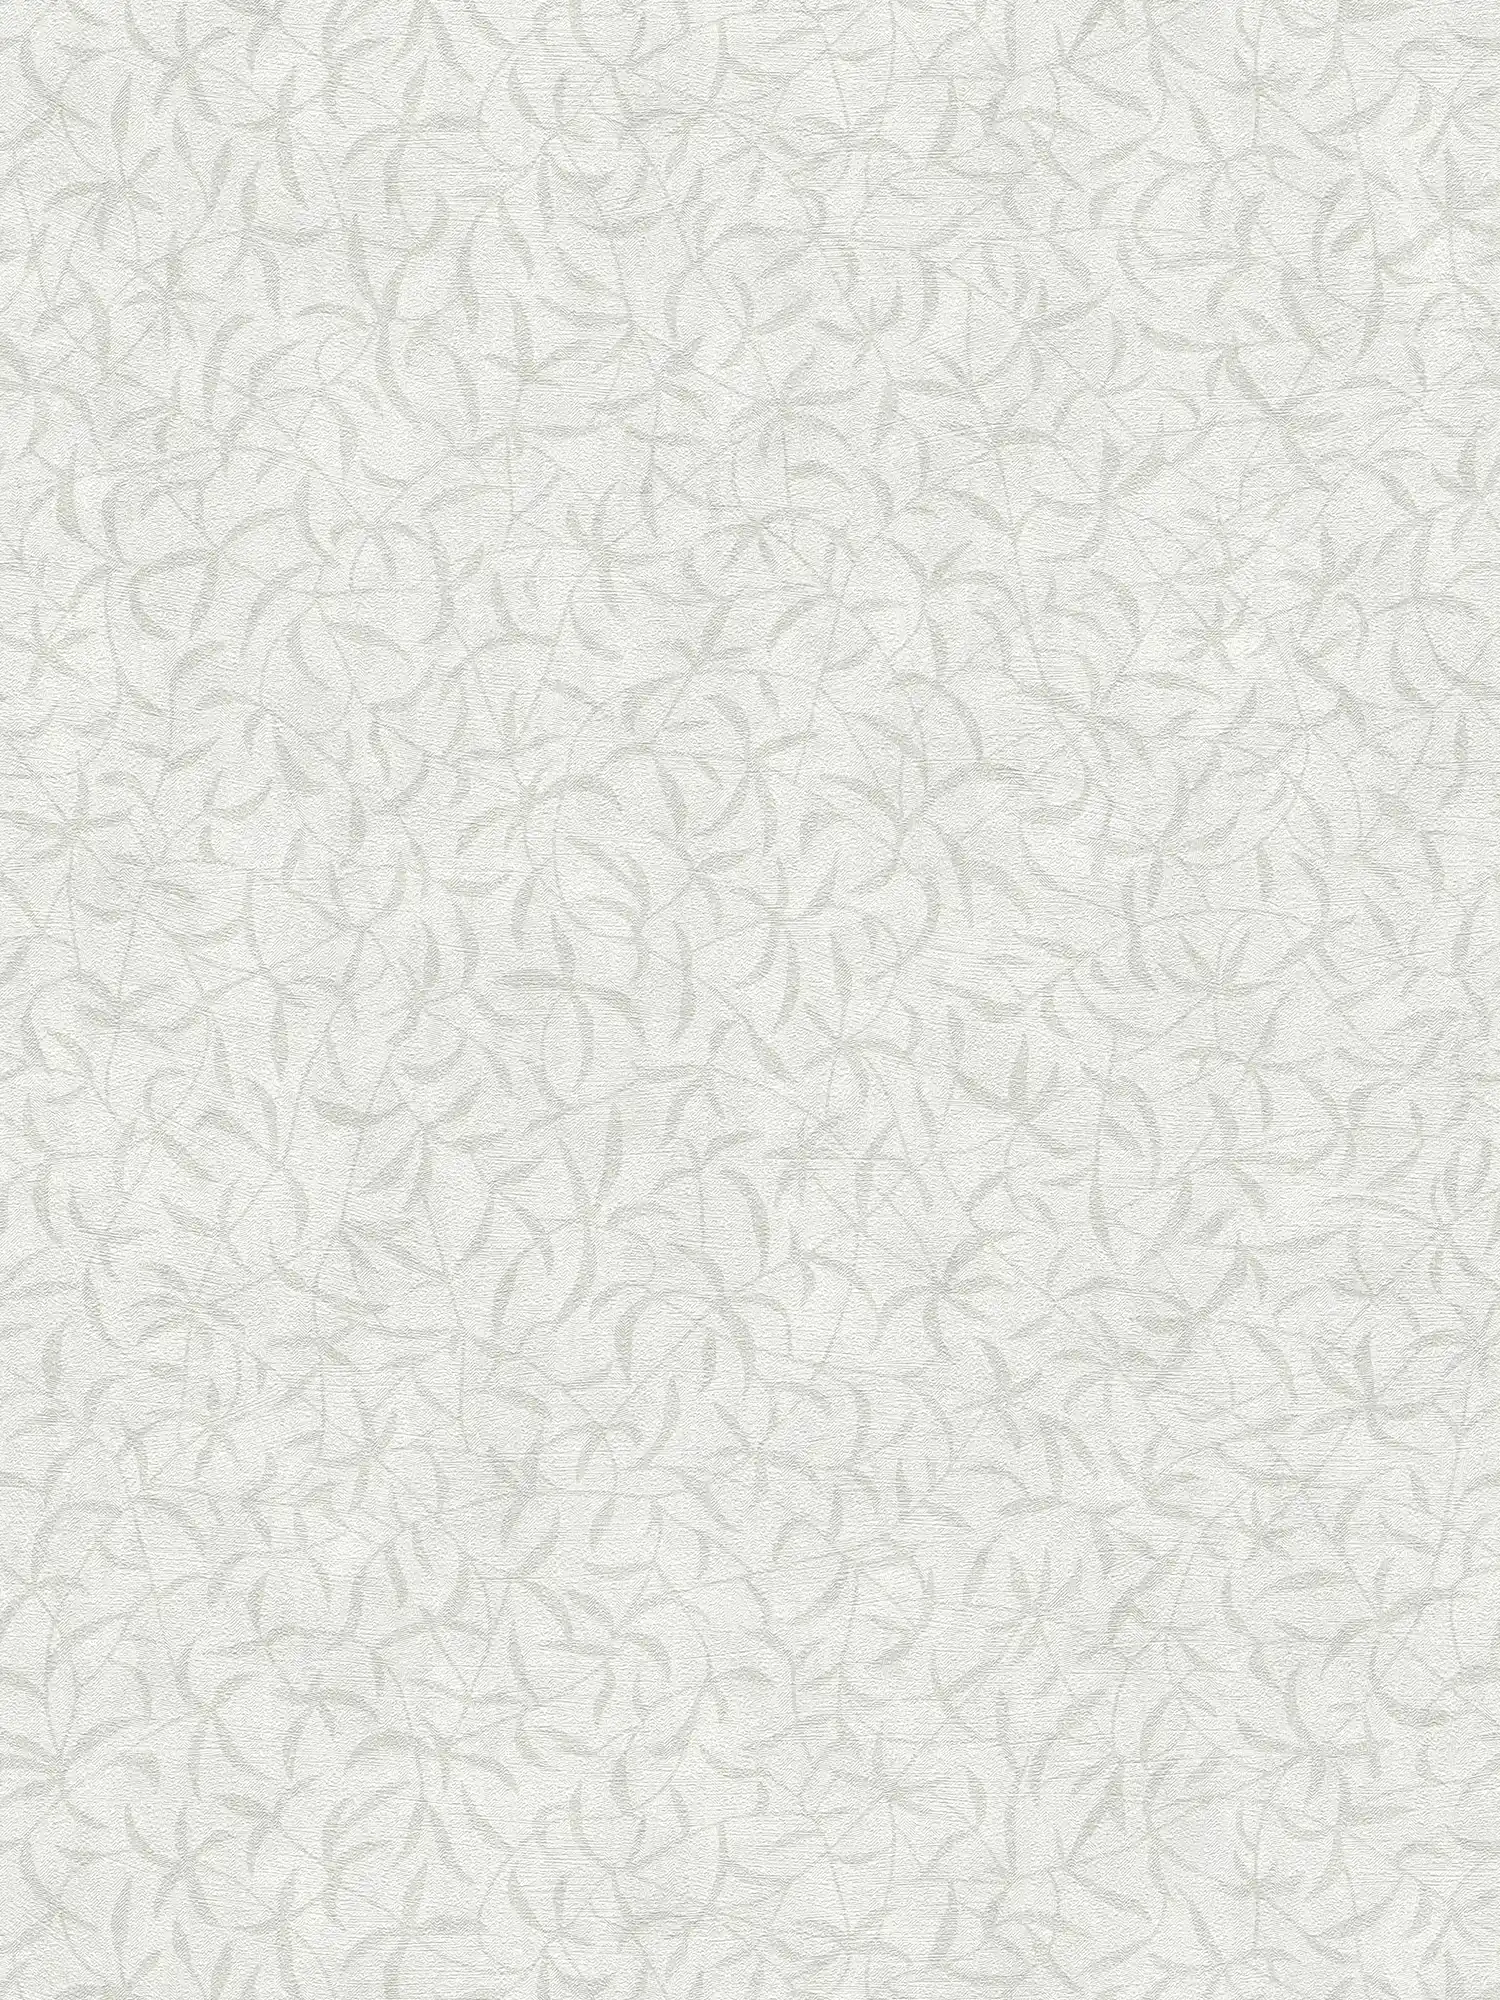 Vliesbehang bloemtakken met structuur - wit, grijs
